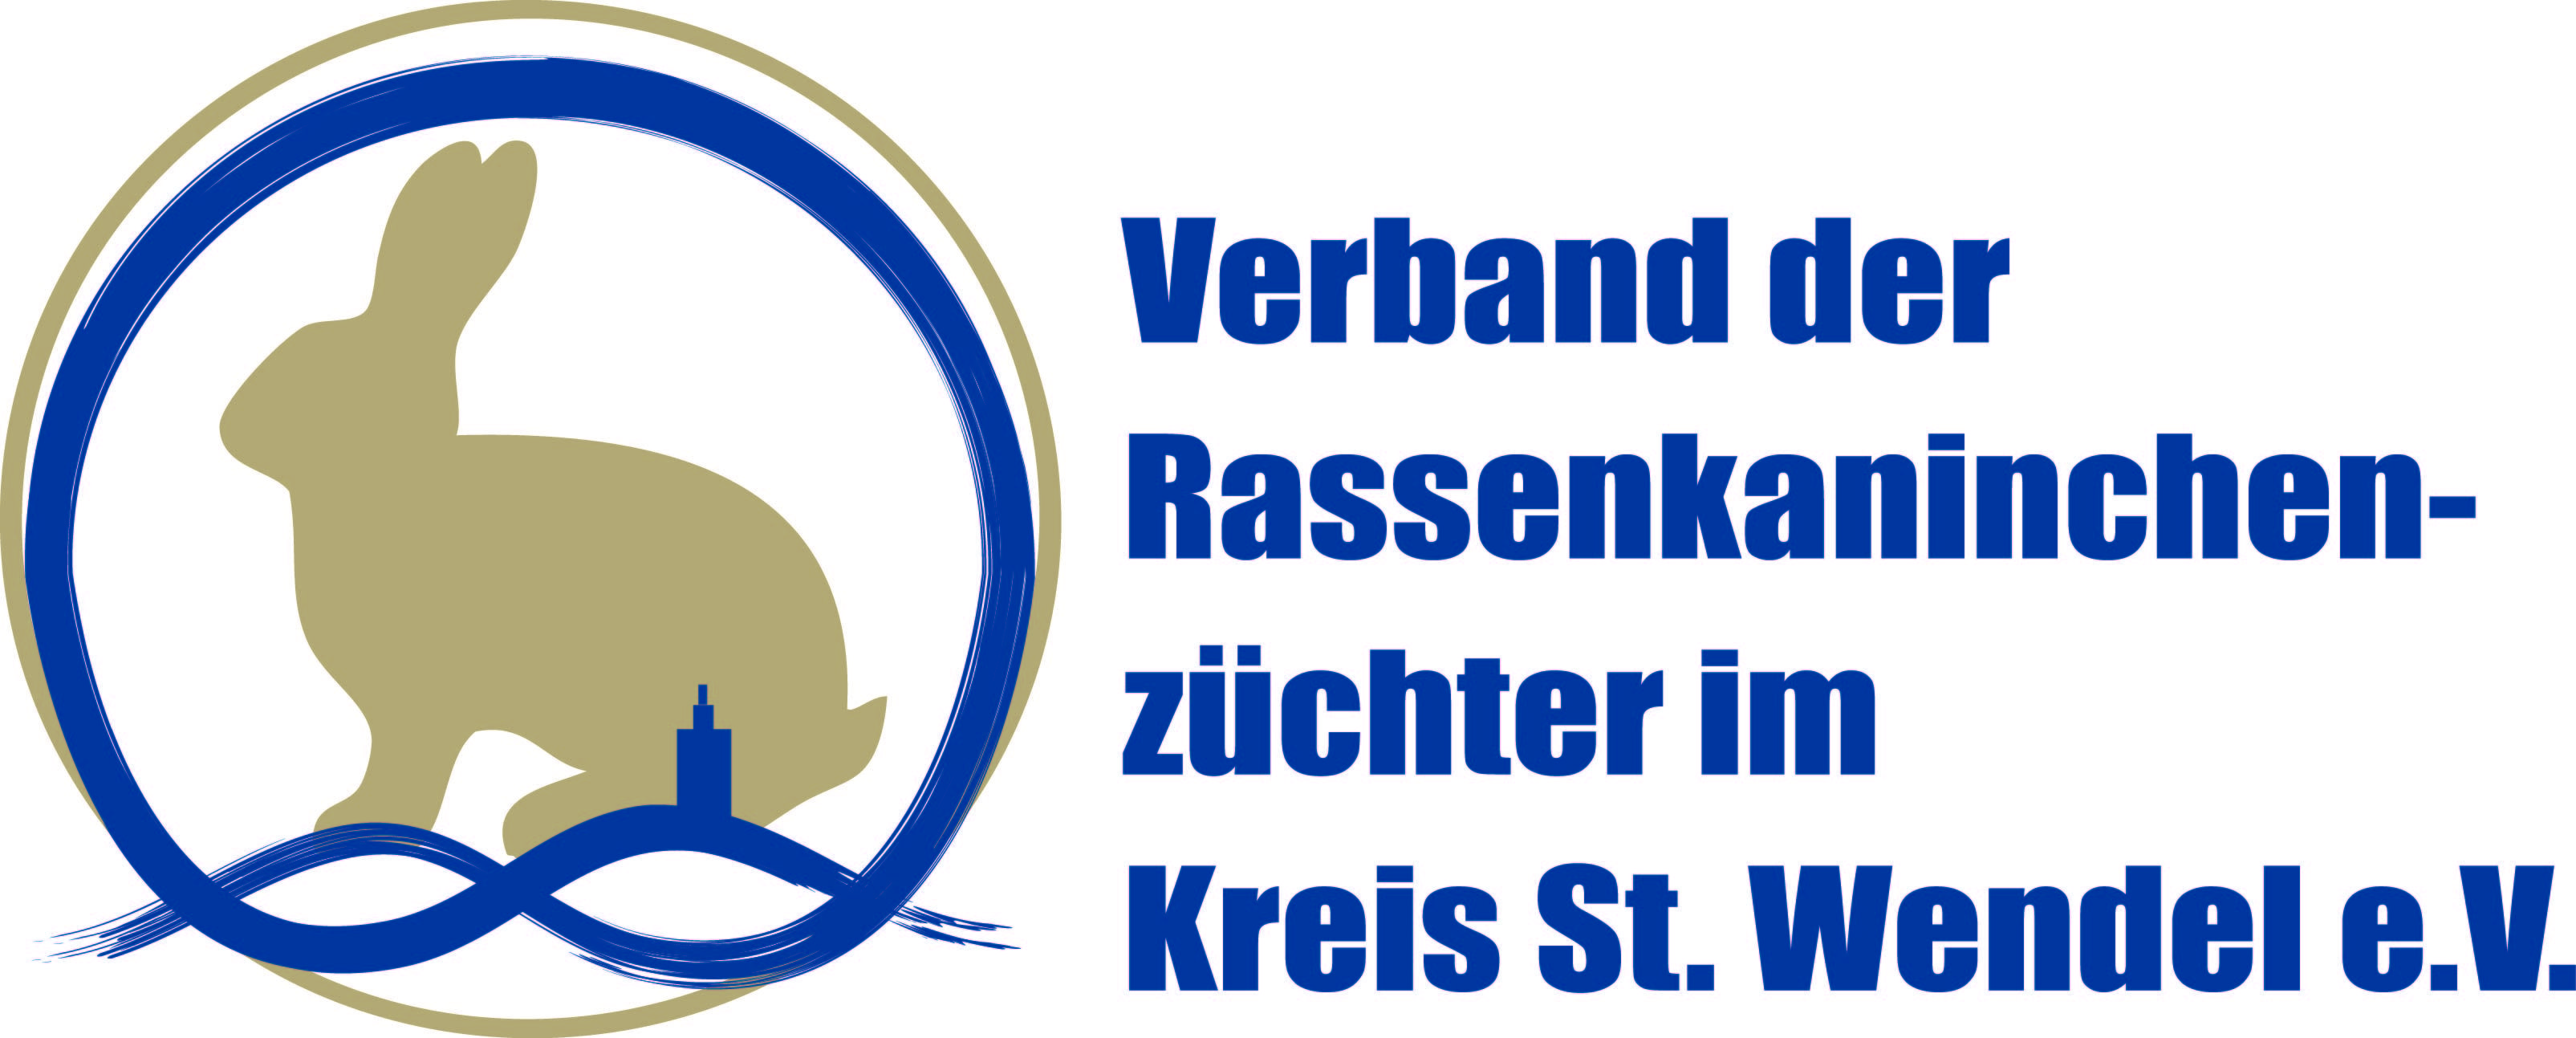 Profilbild des Vereins Verband der Rassekaninchenzüchter im Kreis St. Wendel e.V.